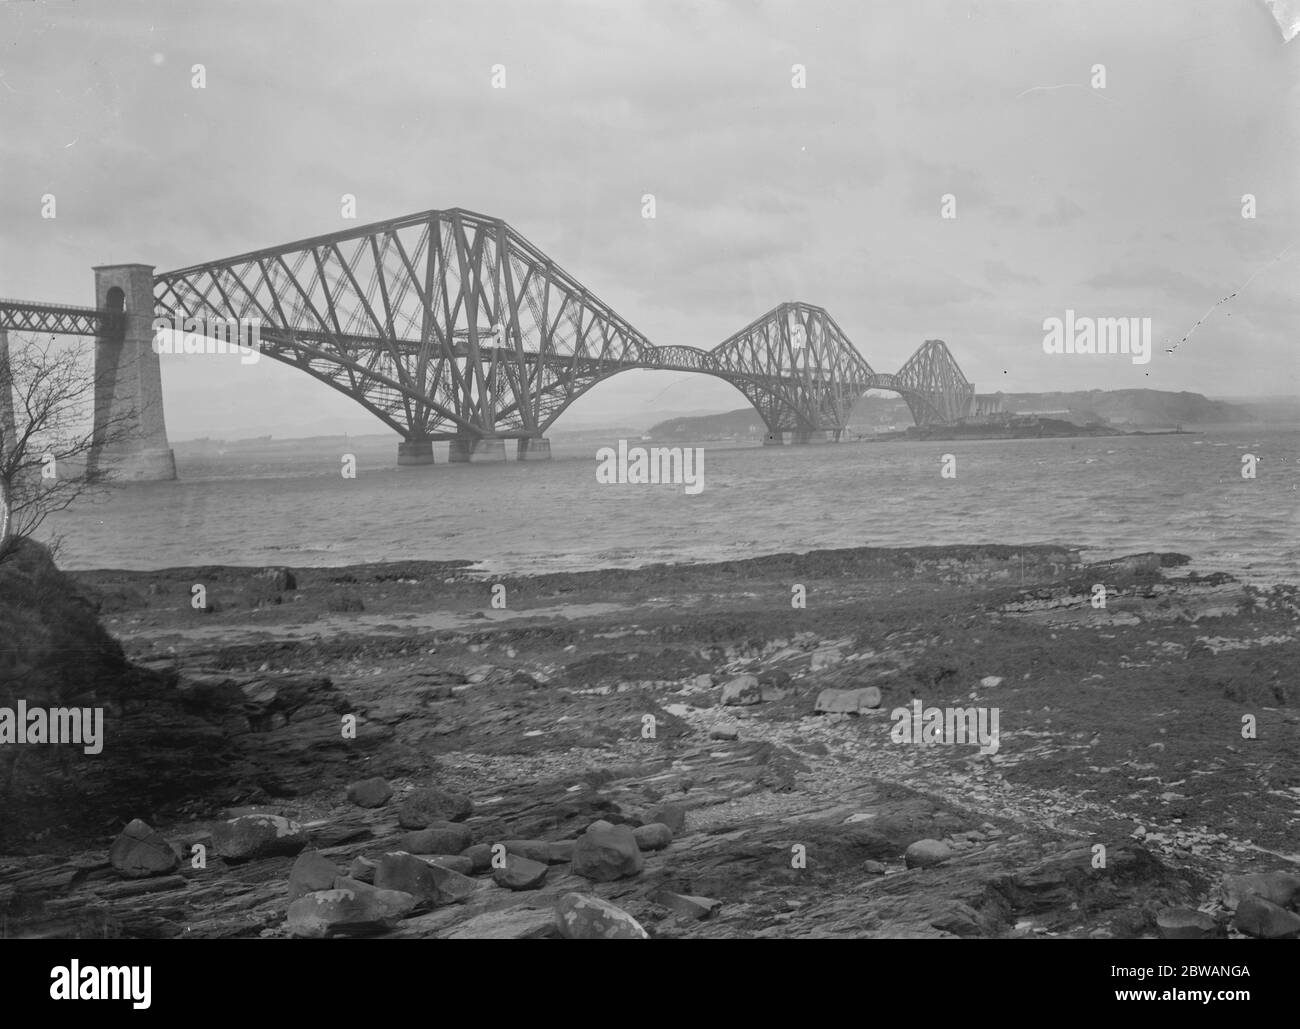 Il Forth Bridge un ponte ferroviario a sbalzo sul Firth of Forth, nella parte orientale della Scozia Foto Stock